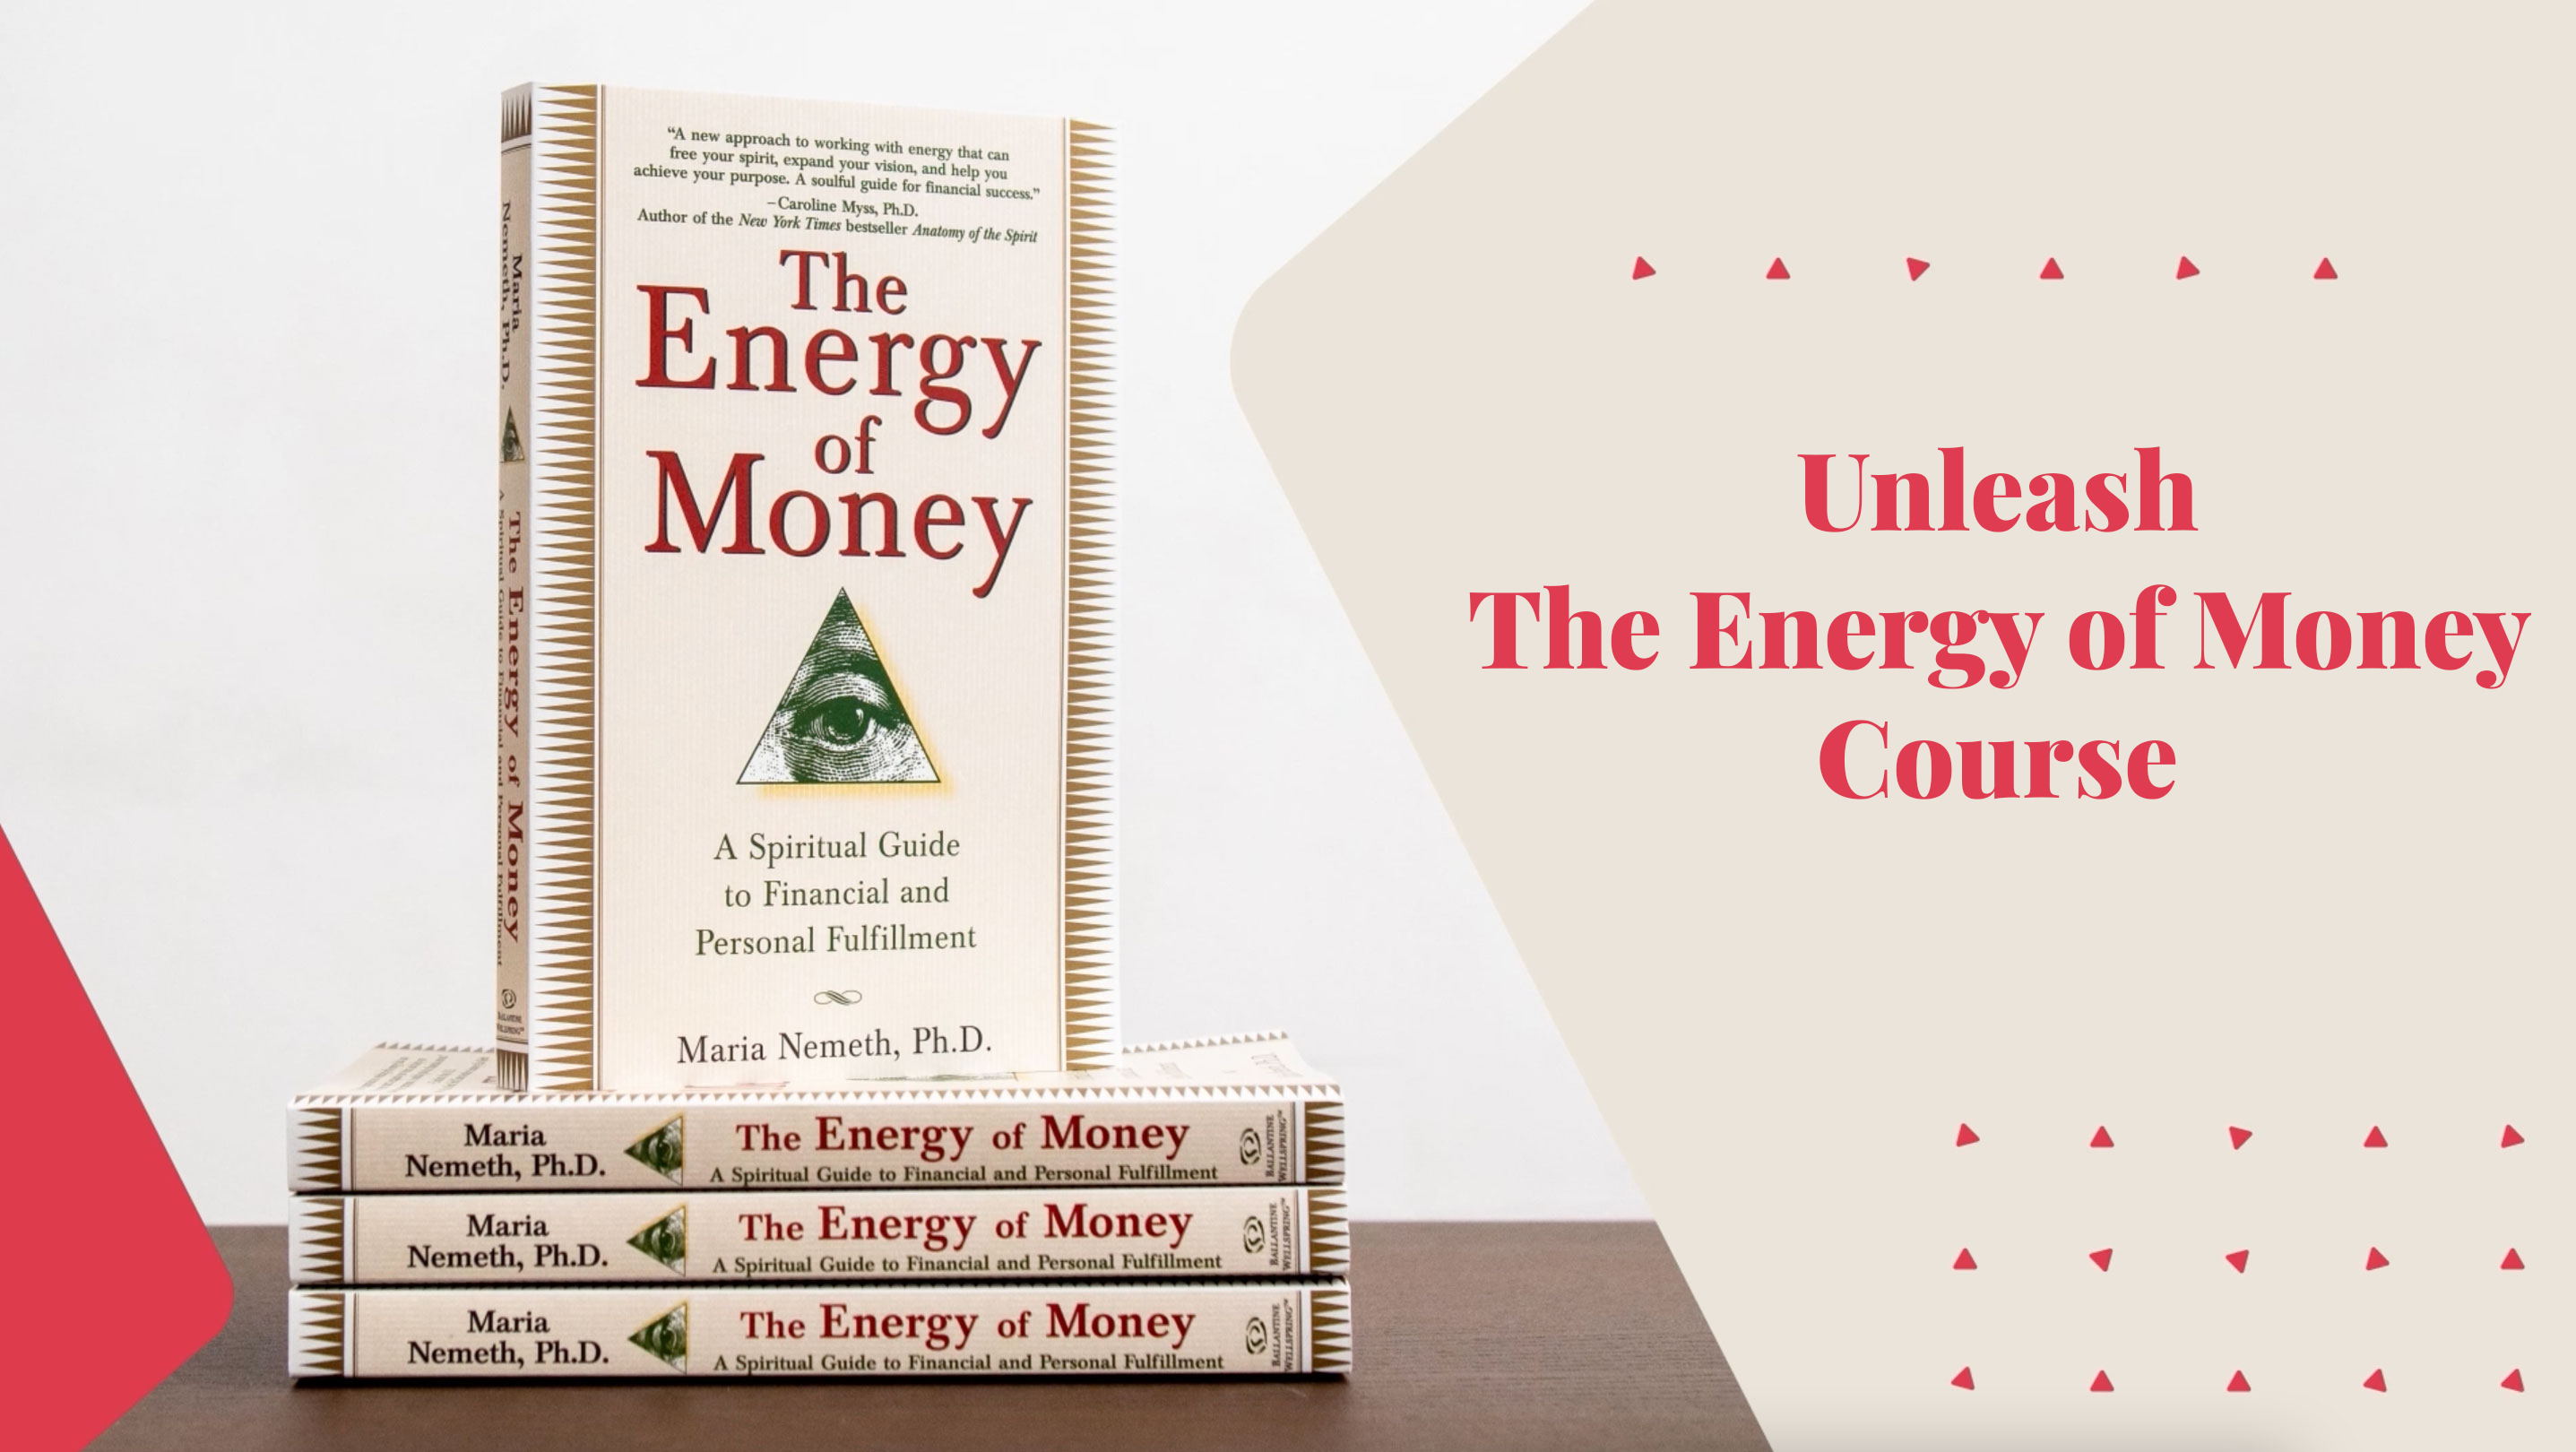 Energy of Money Courses